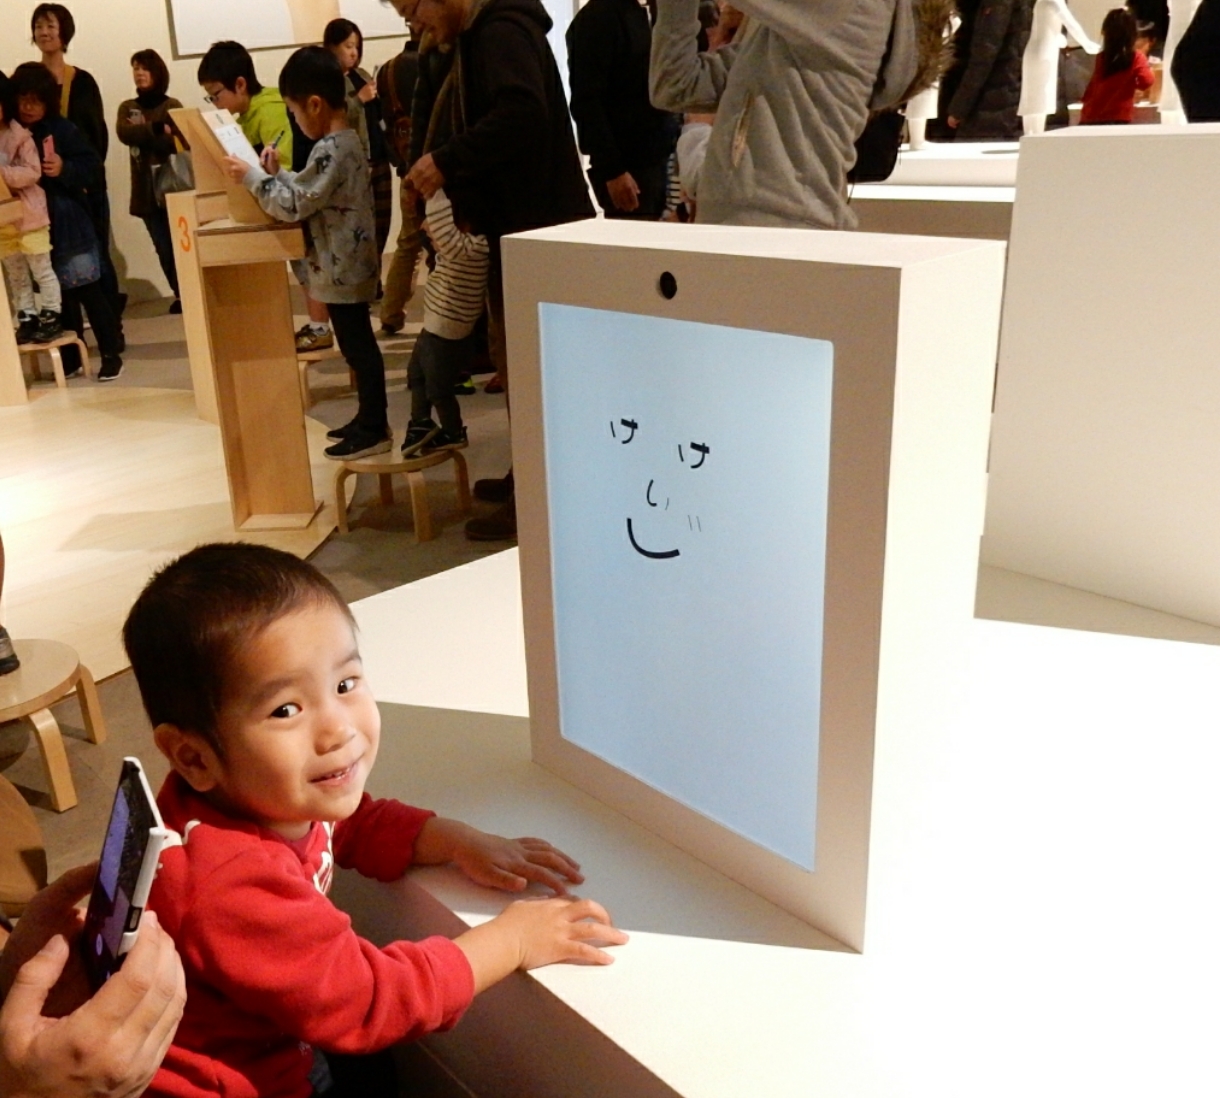 デザインあ展 In Shiga に行ってきました 大人も小さな子どもも楽しめます 行く価値あり 佐川美術館 2月11日まで開催 滋賀のママがイベント 育児 遊び 学びを発信 シガマンマ ピースマム